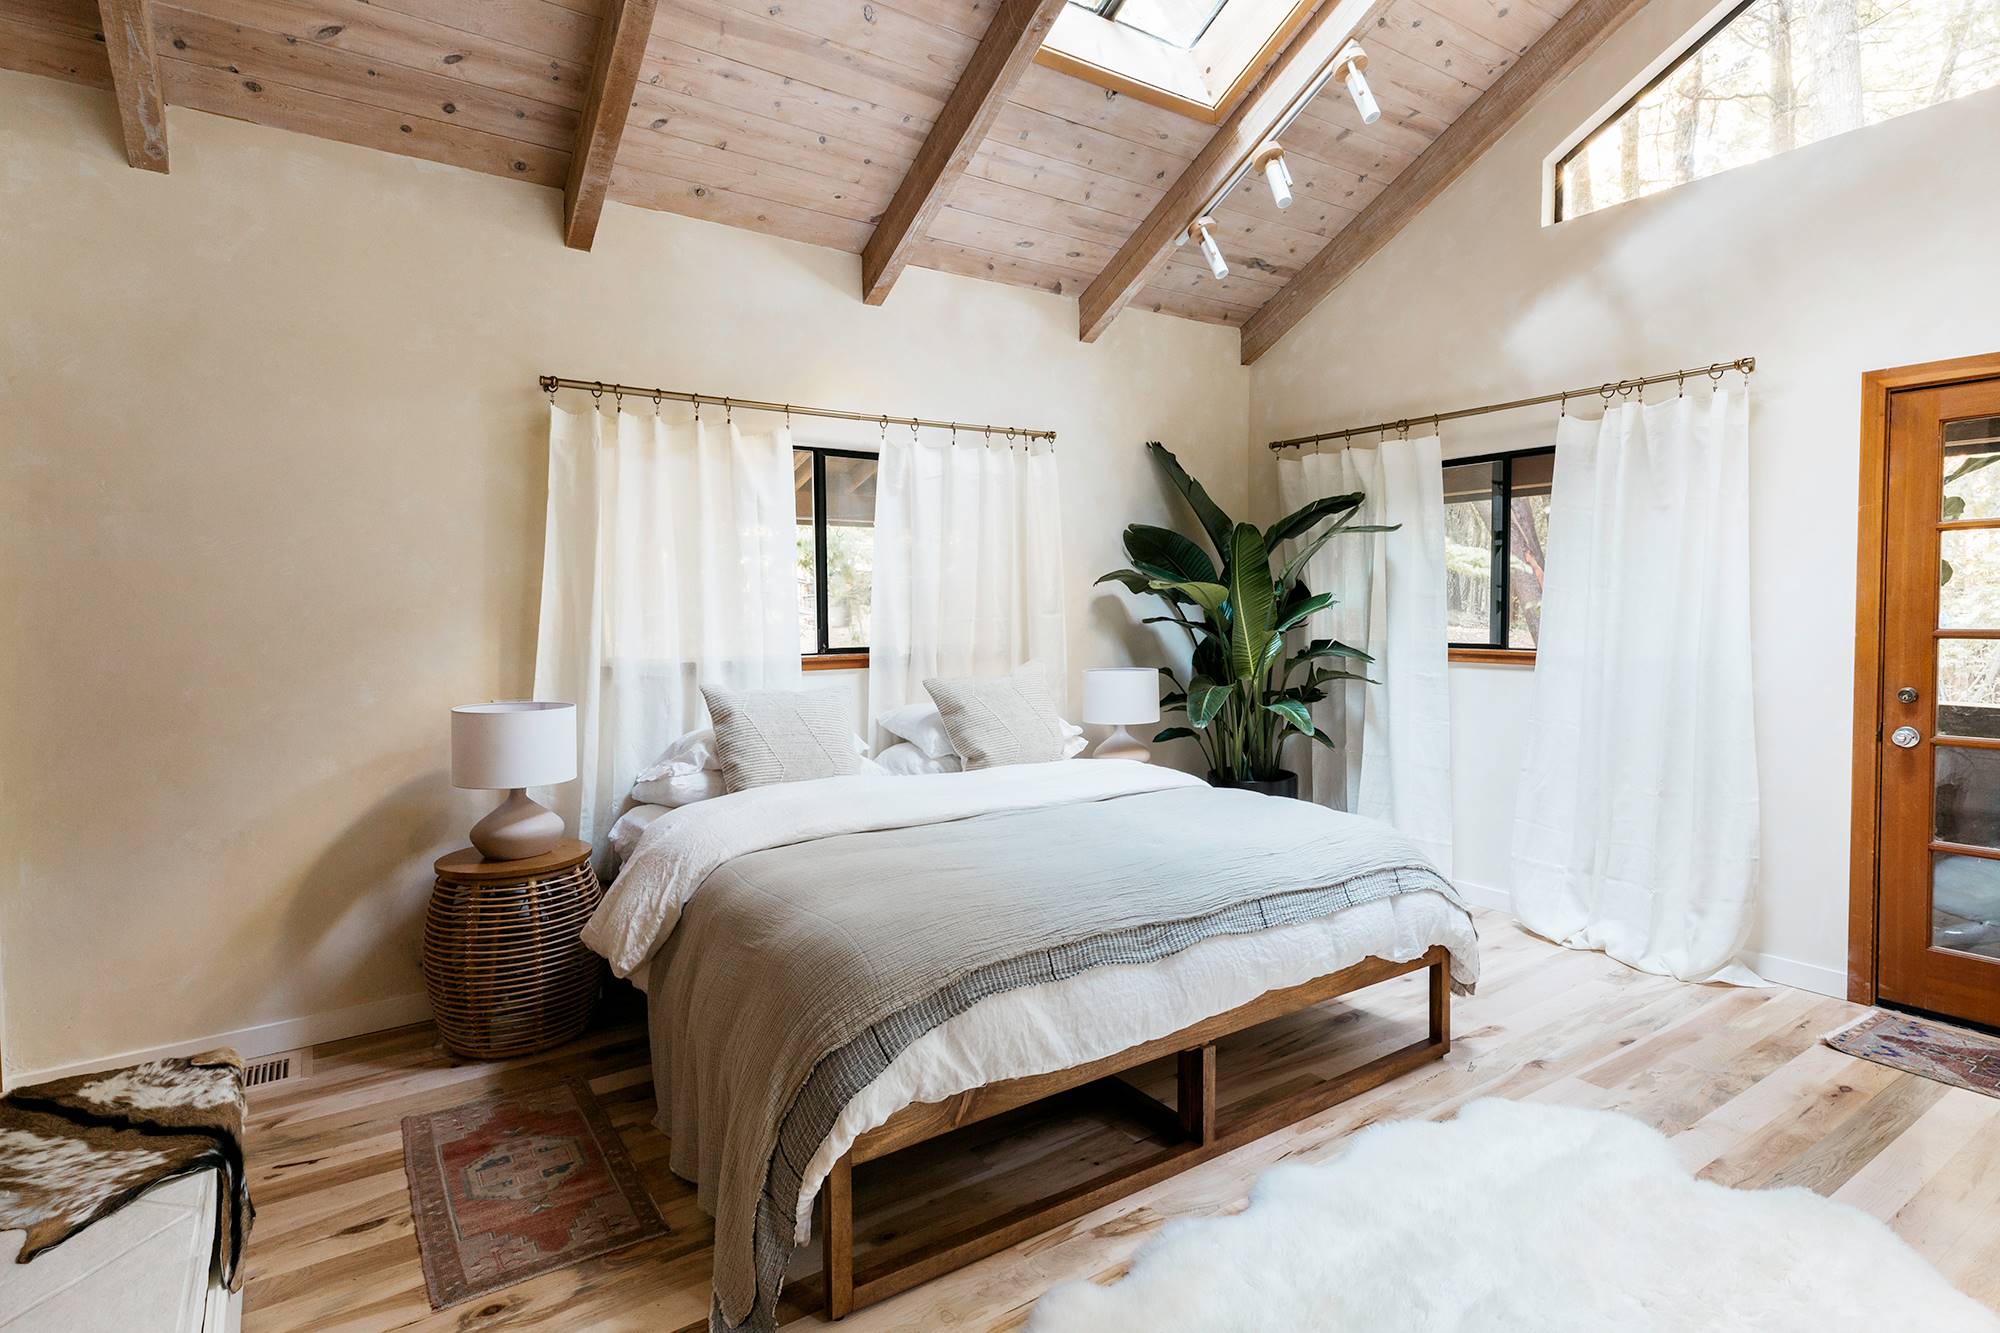 Dormitorio decorado en tonos neutros con mobiliario de madera y plantas